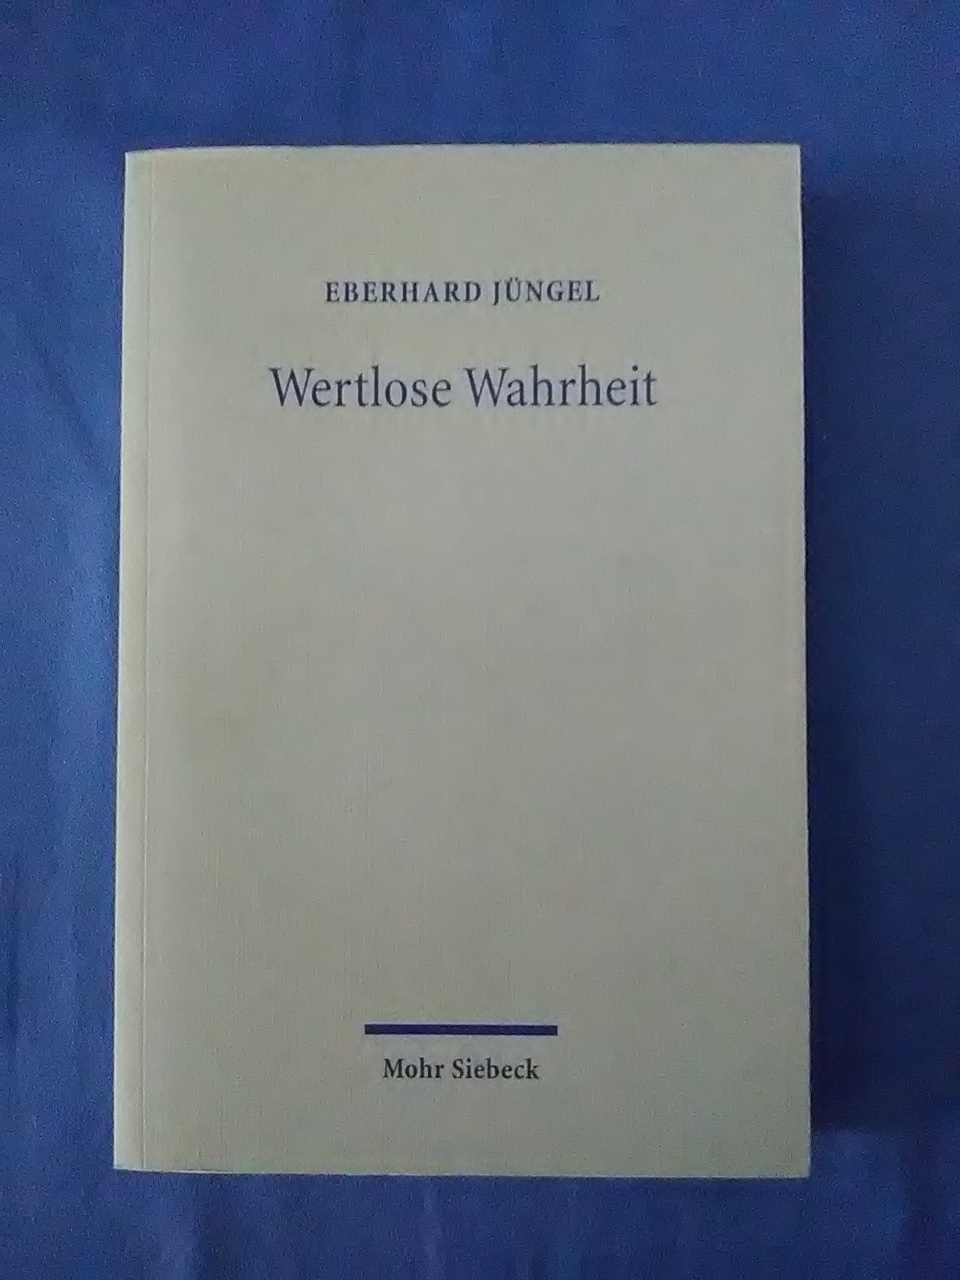 Wertlose Wahrheit : zur Identität und Relevanz des christlichen Glaubens. Theologische Erörterungen III. - Jüngel, Eberhard.